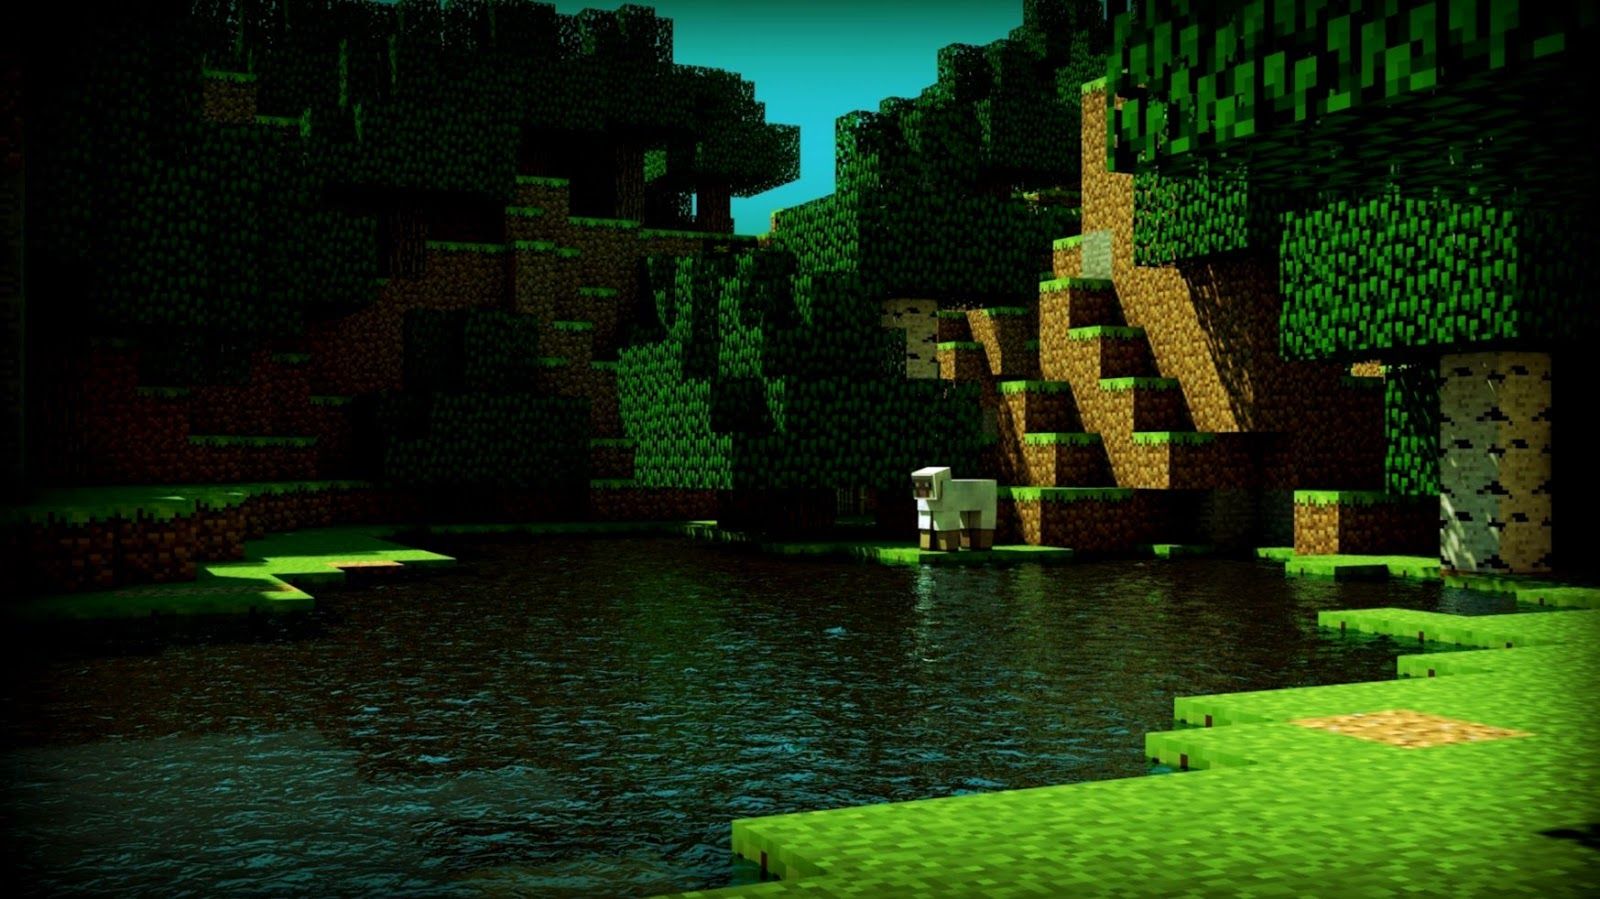 Hình nền Minecraft 3D sẽ là sự lựa chọn tuyệt vời cho bạn khi muốn làm mới trang desktop. Từ phong cảnh độc đáo, đến các nhân vật được lấy cảm hứng từ game, bạn sẽ tìm thấy đủ các loại hình nền 3D đẹp mắt trên Wallpaper Cave.